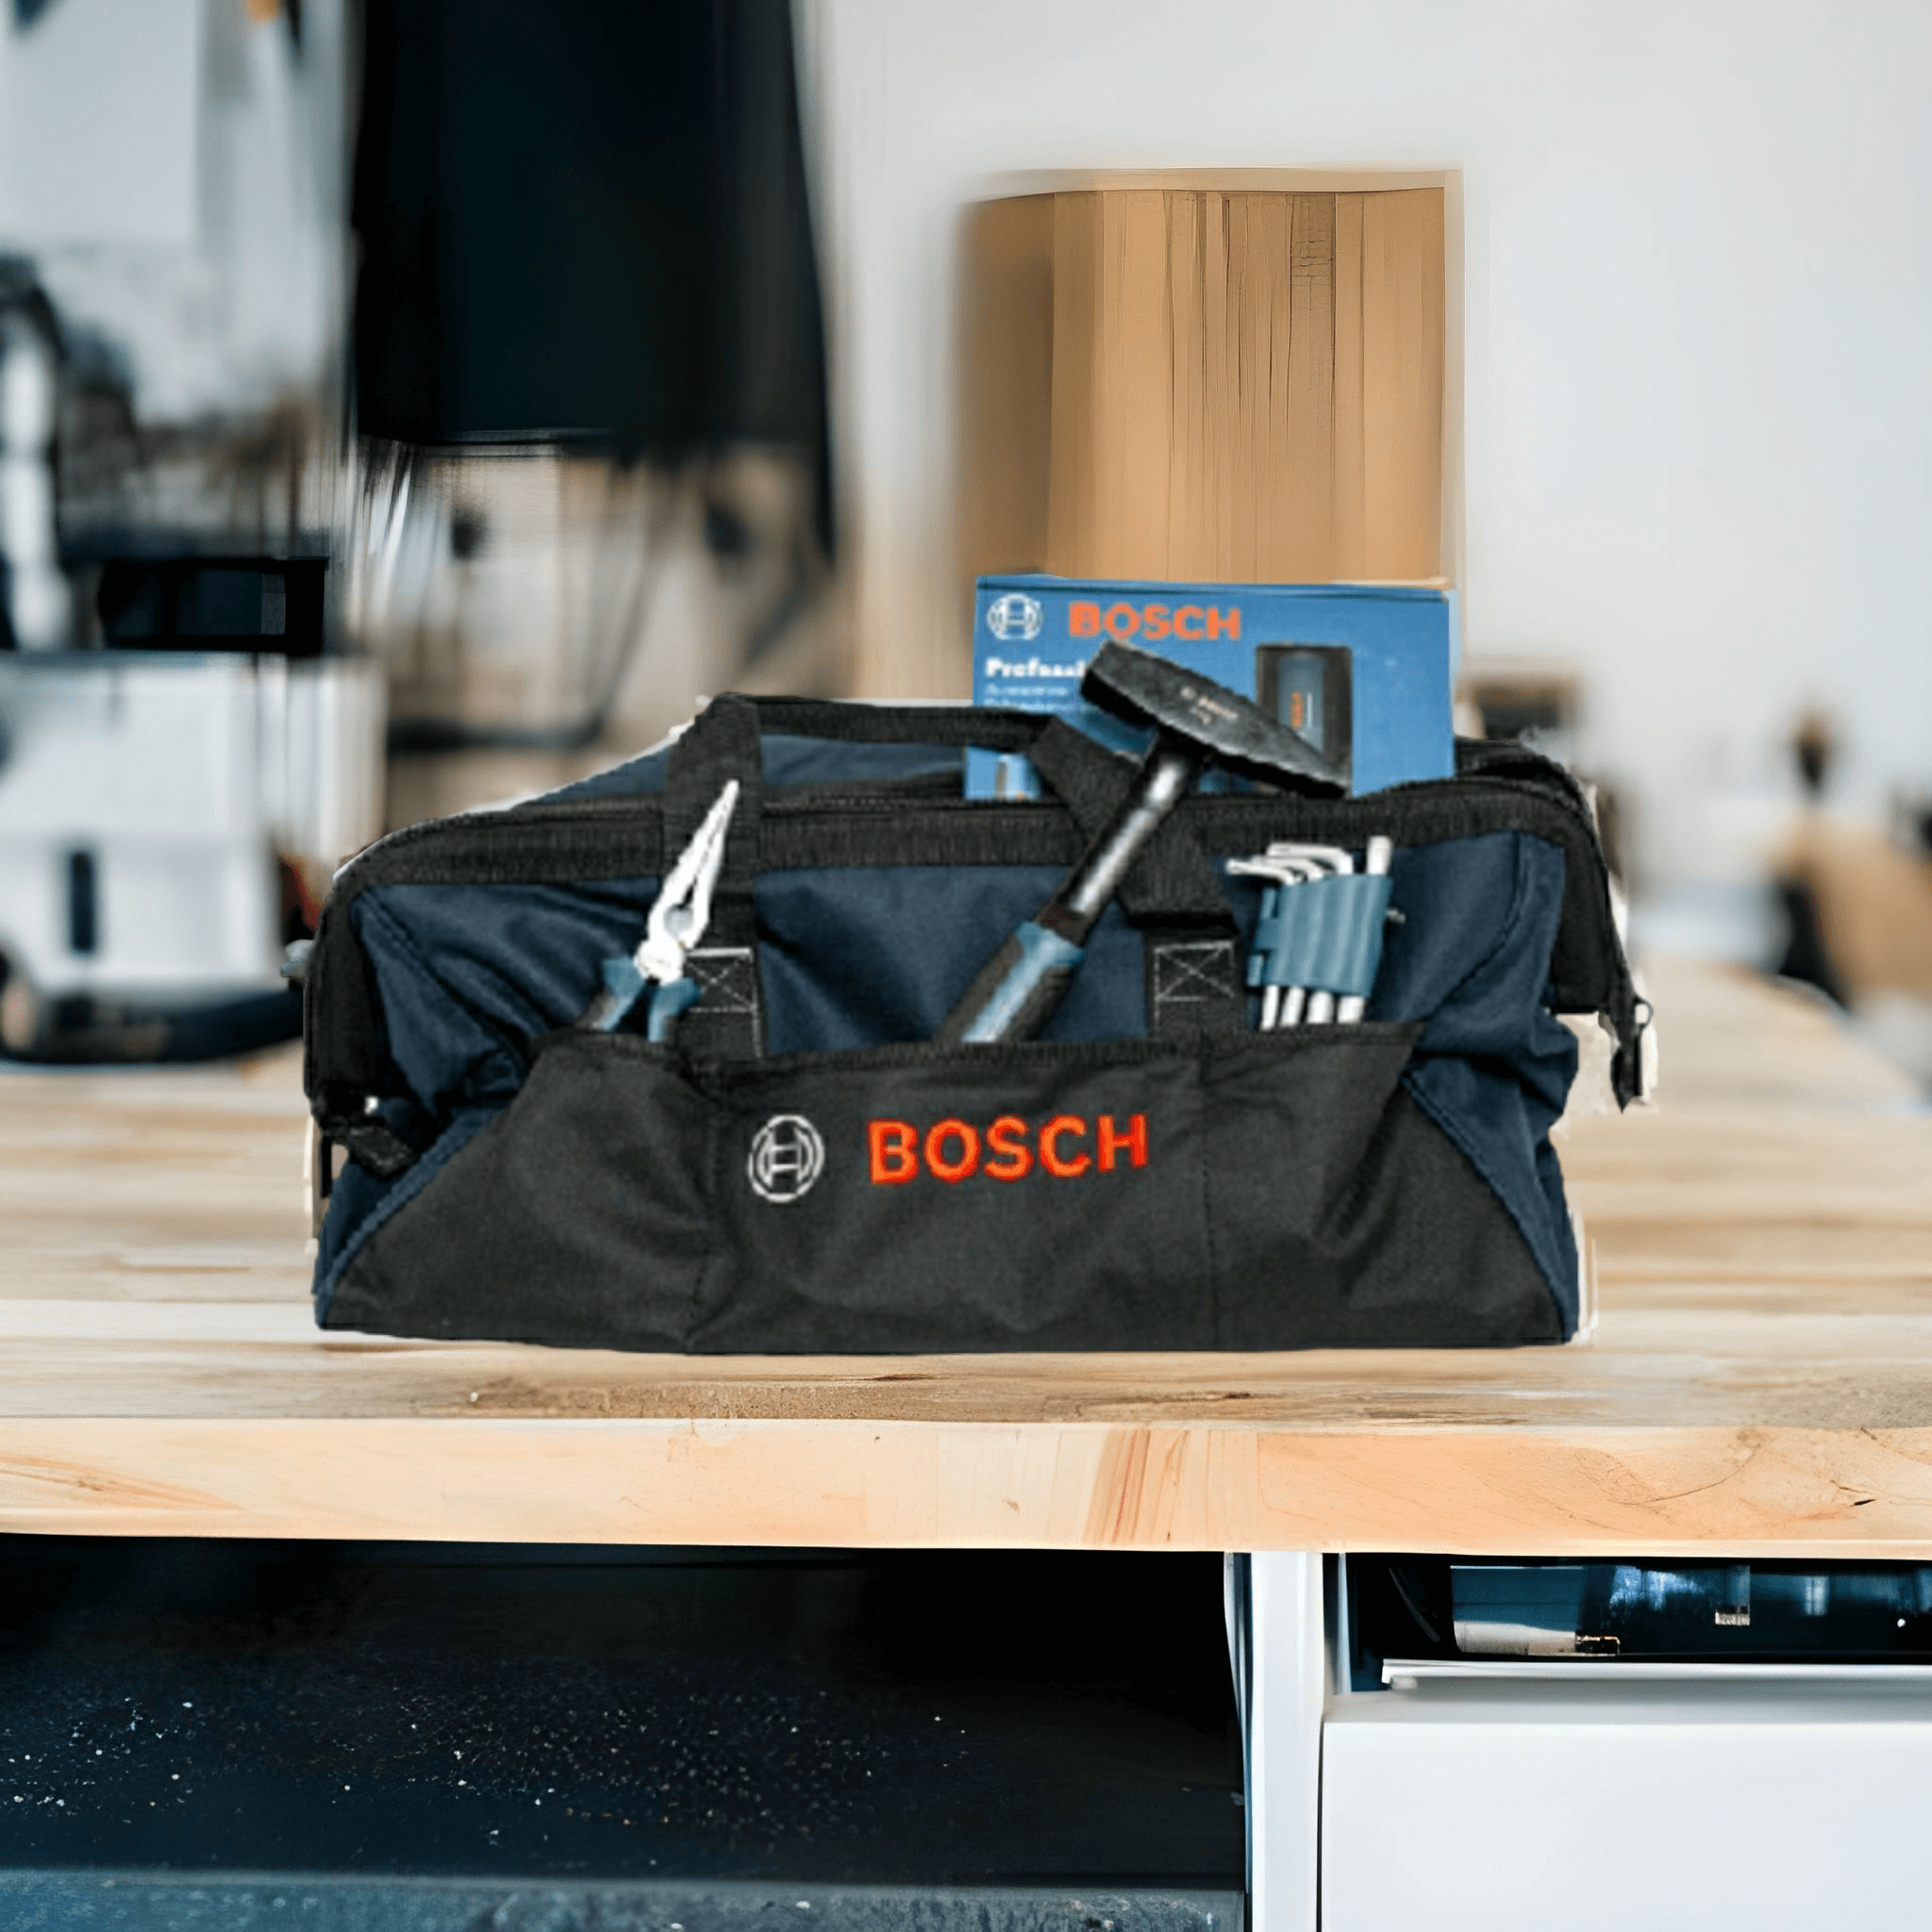 Bosch Professional Werkzeugtasche